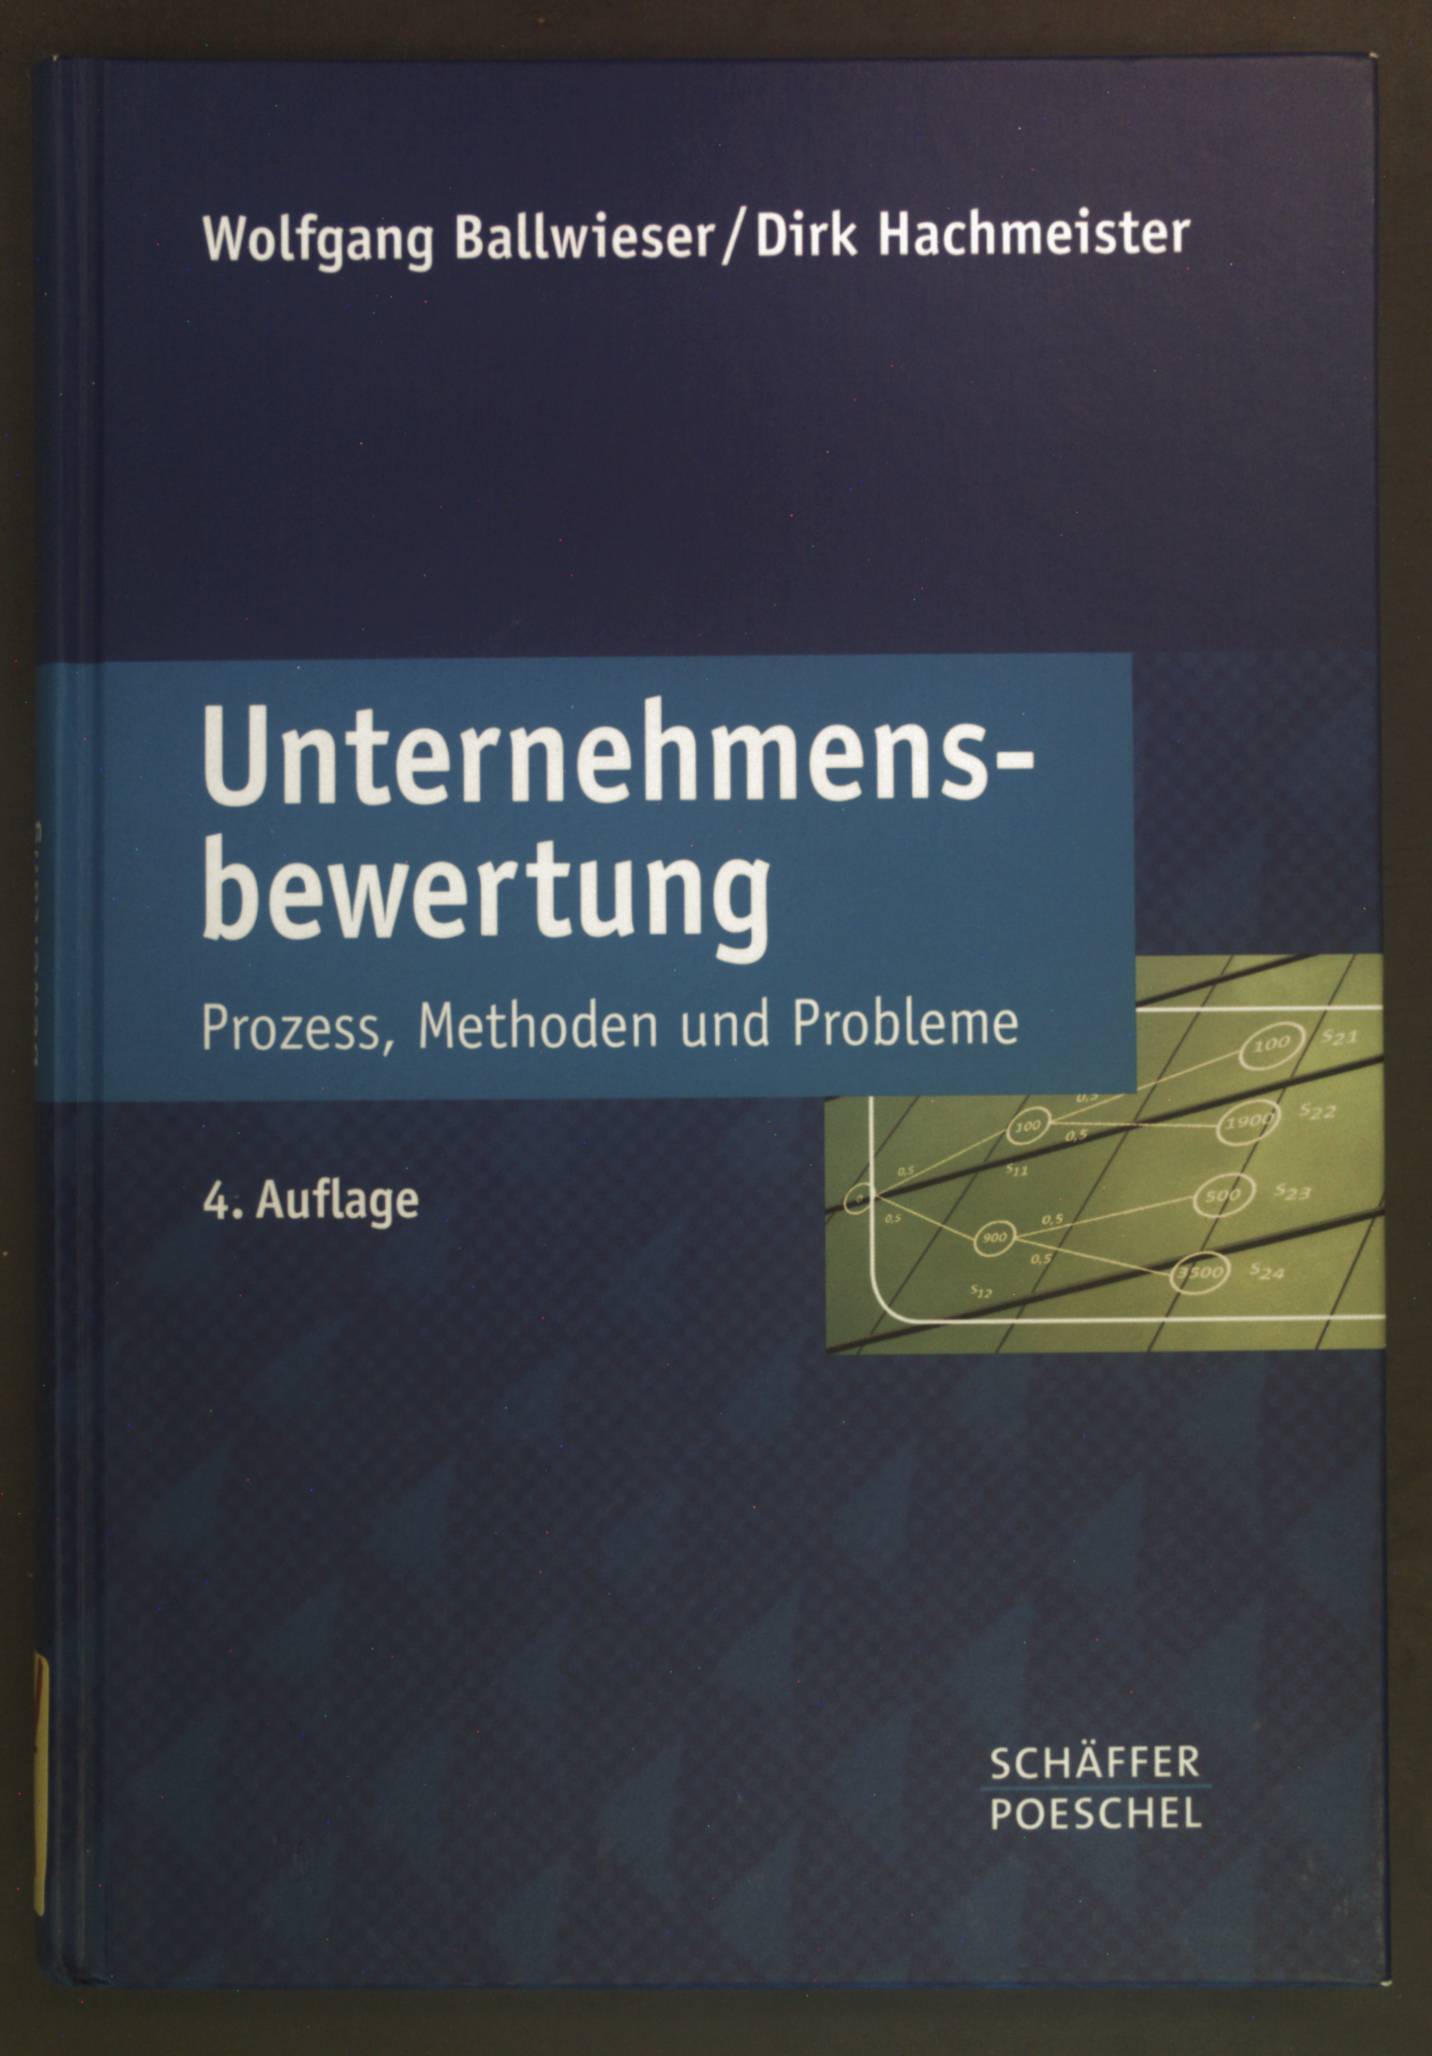 Unternehmensbewertung : Prozess, Methoden und Probleme. - Ballwieser, Wolfgang und Dirk Hachmeister